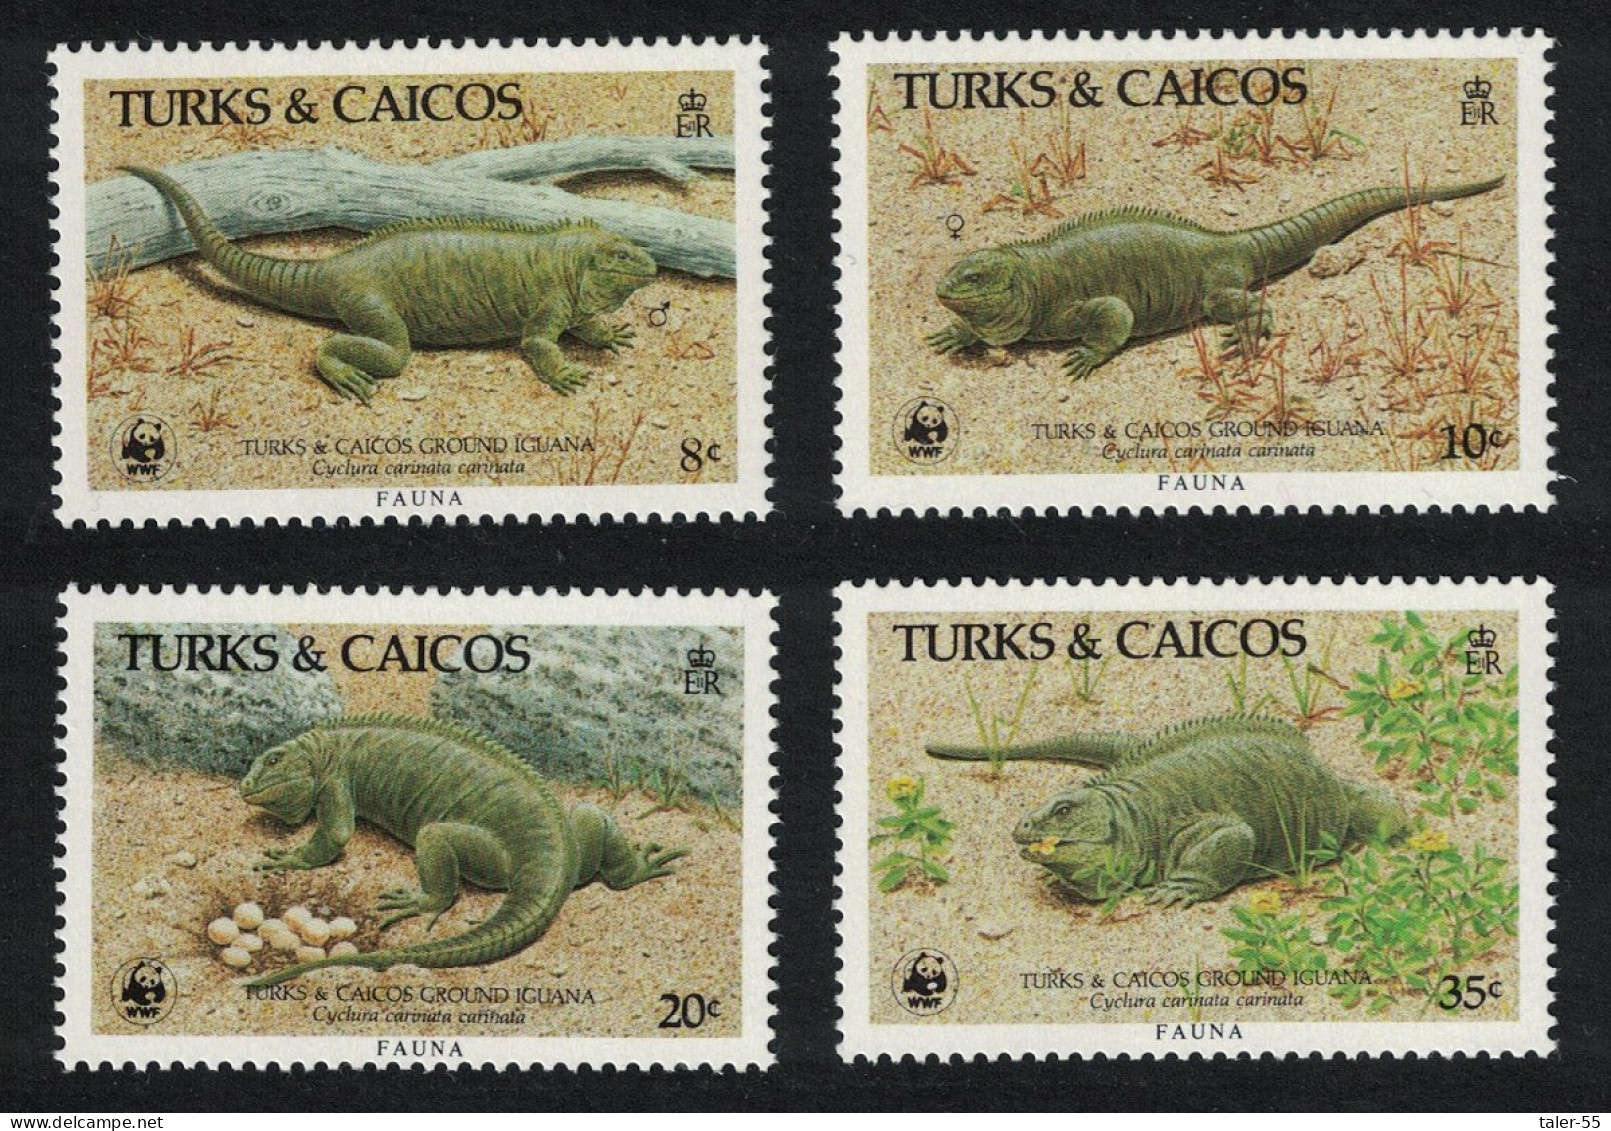 Turks And Caicos WWF Ground Iguana 4v 1986 MNH SG#888-891 MI#777-780 Sc#710-713 - Turks & Caicos